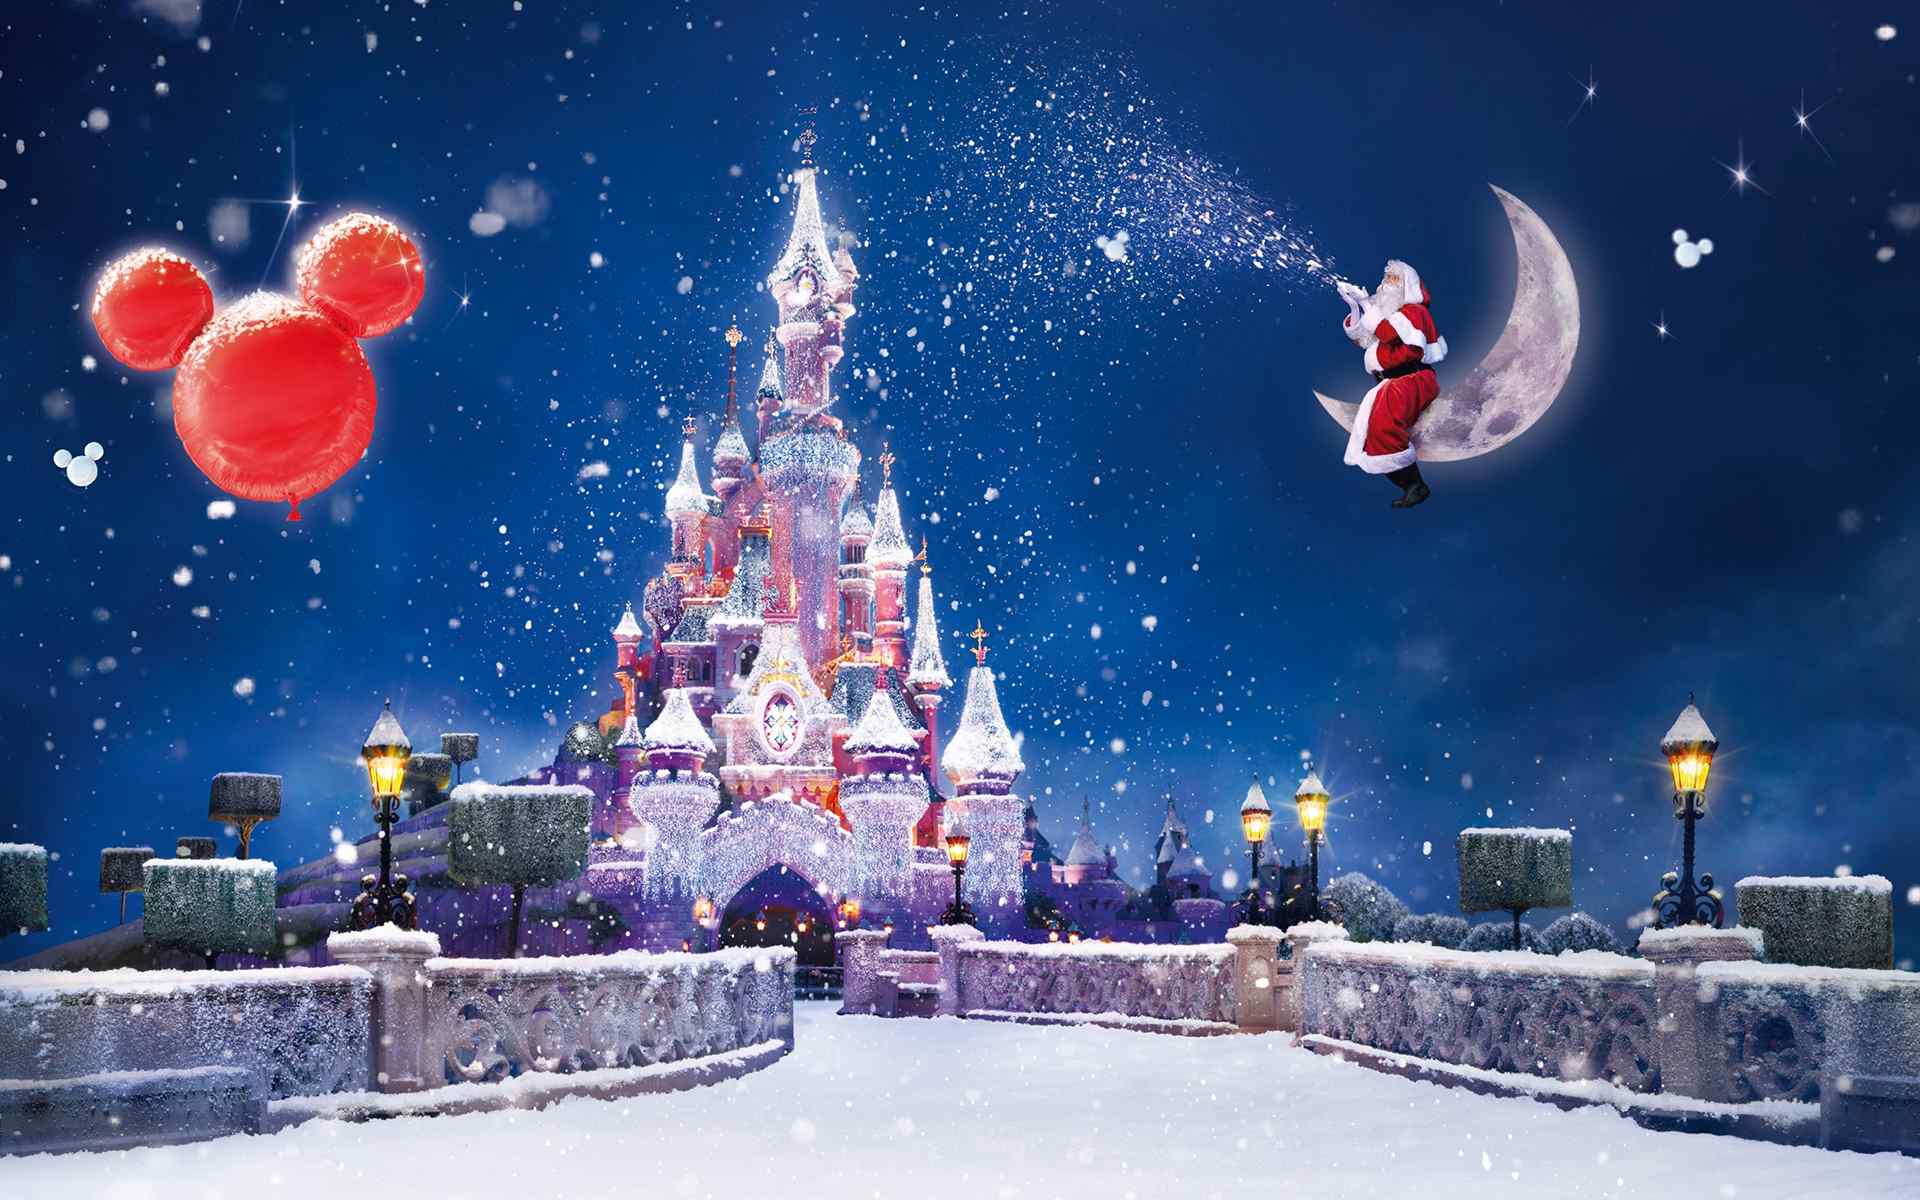 迪士尼冰雪童话圣诞节高清桌面壁纸